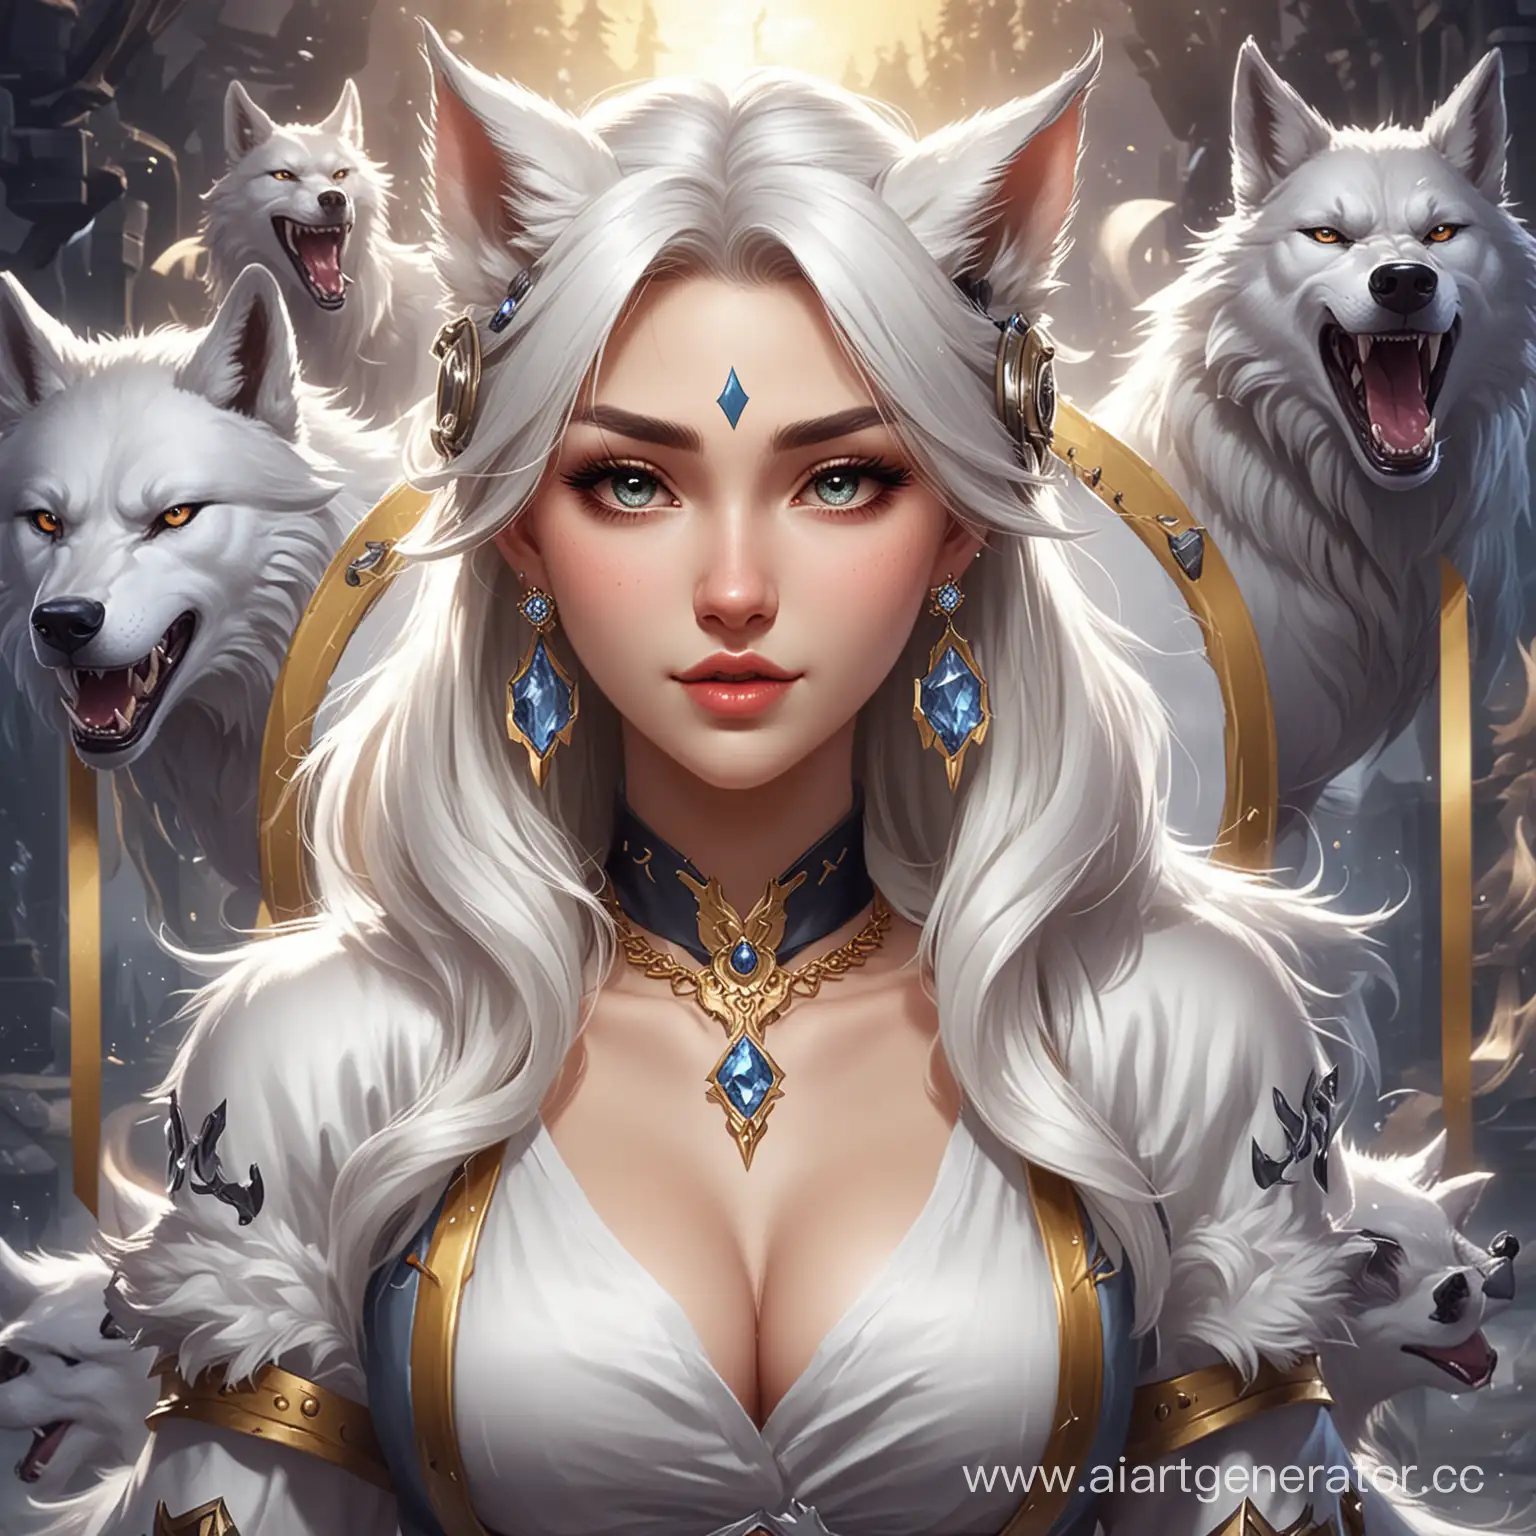 Игра mobile legends  где 4 волка а по середине белая волчица с серьгами в ушах с надписью посередине SMM